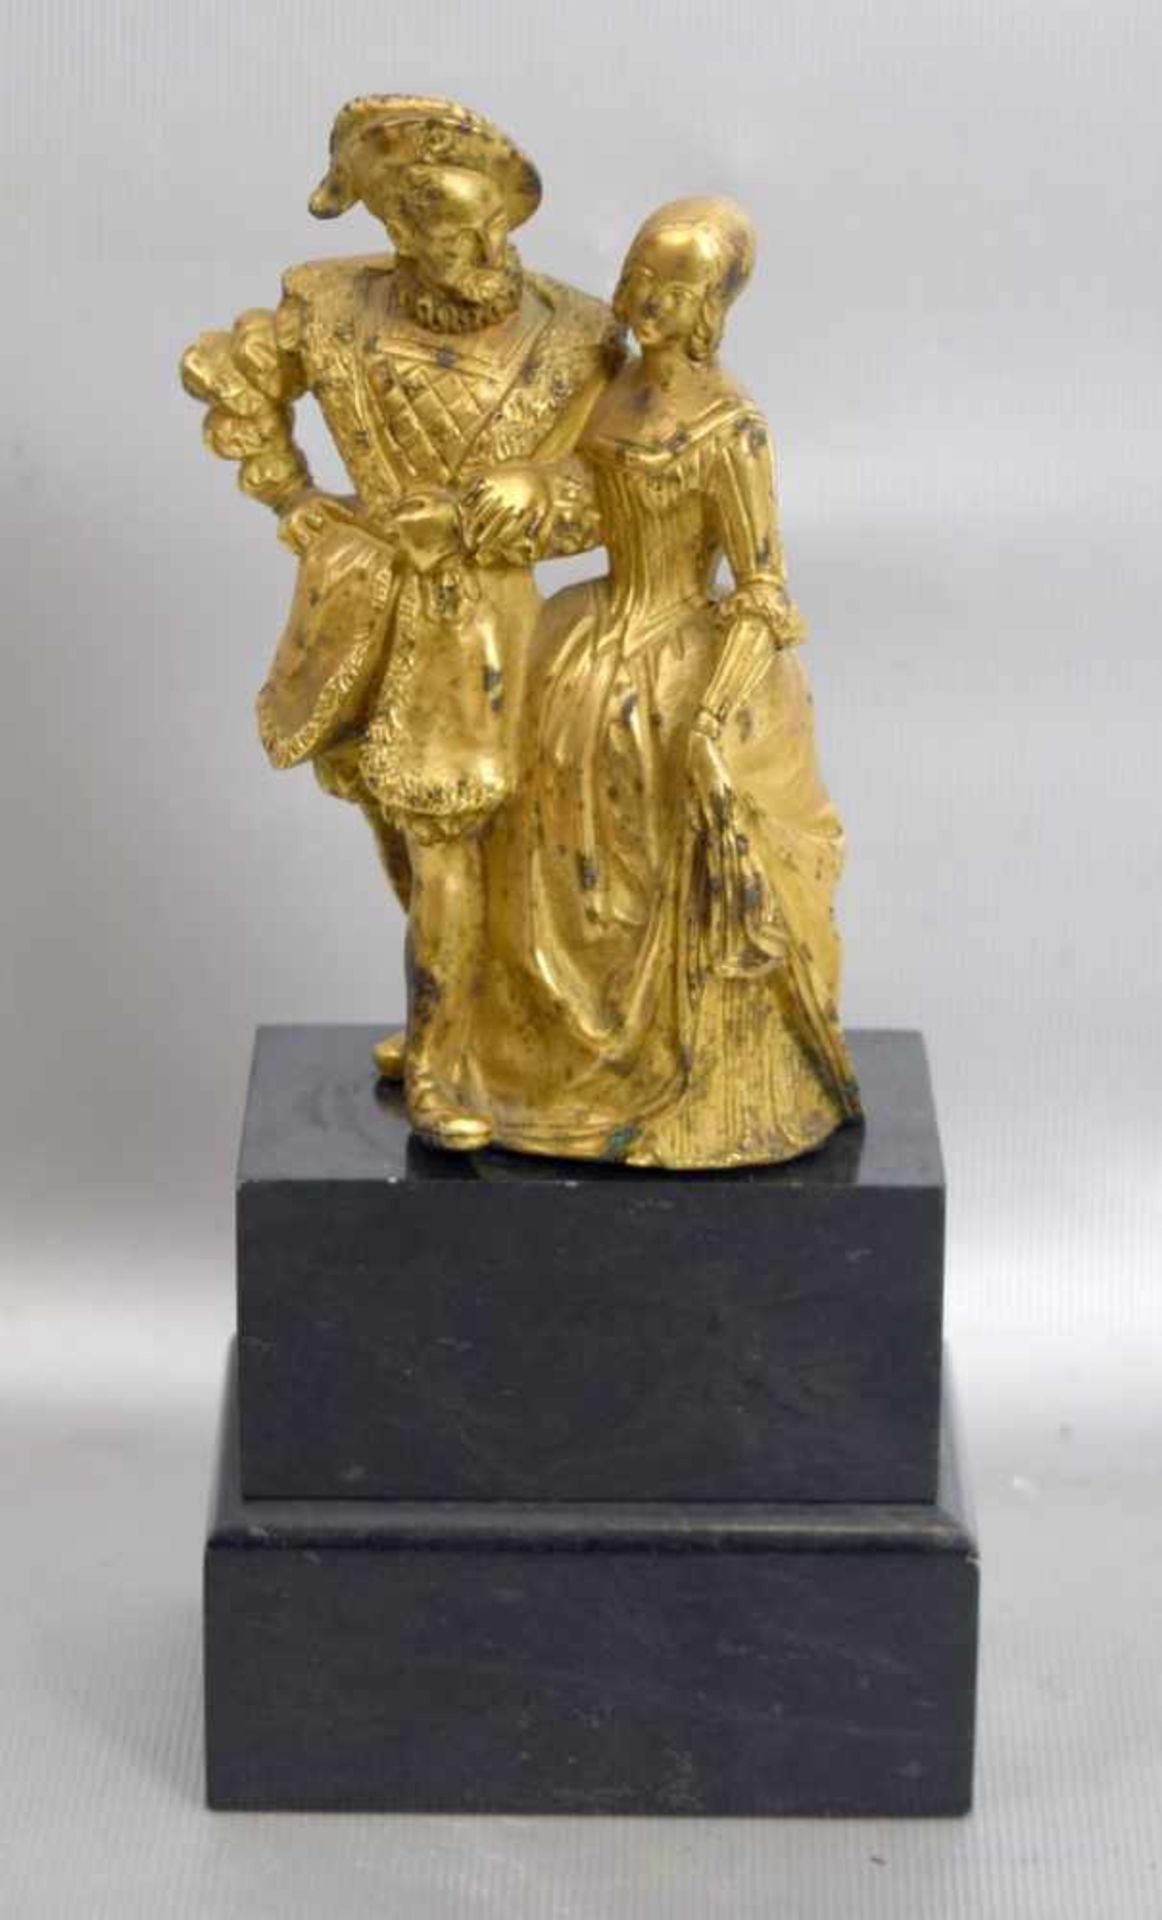 Liebespaarauf schwarzem Marmorsockel stehend, Bronze, vergoldet, sign. I. du Bois, Paris, H 18,5 cm,